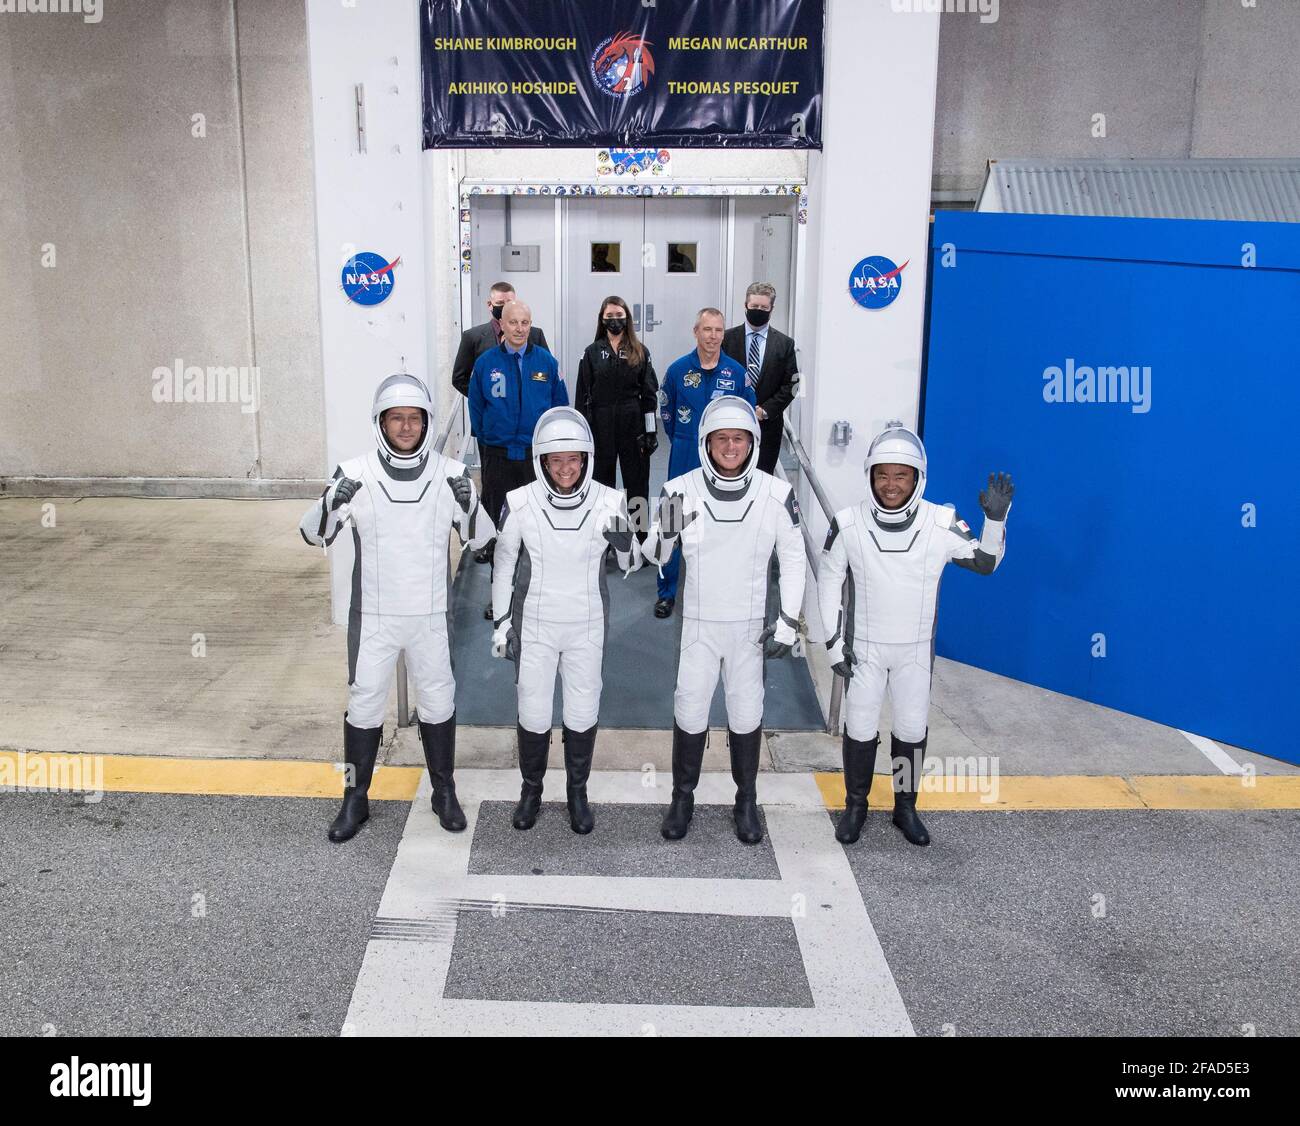 Von links nach rechts tragen ESA-Astronaut Thomas Pesquet, die NASA-Astronauten Megan McArthur und Shane Kimbrough sowie der Astronaut Akihiko Hoshide der Japan Aerospace Exploration Agency (JAXA) SpaceX-Raumanzüge, Werden gesehen, wie sie sich darauf vorbereiten, das Neil A. Armstrong Operations and Checkout Building für den Launch Complex 39A zu verlassen, um die Raumsonde SpaceX Crew Dragon für den Start der Crew-2-Mission am Freitag, den 23. April 2021, im Kennedy Space Center der NASA in Florida zu besteigen. Die NASA-Mission SpaceX Crew-2 ist die zweite Rotationsmission der Raumsonde SpaceX Crew Dragon und des Falcon 9-Felsens Stockfoto